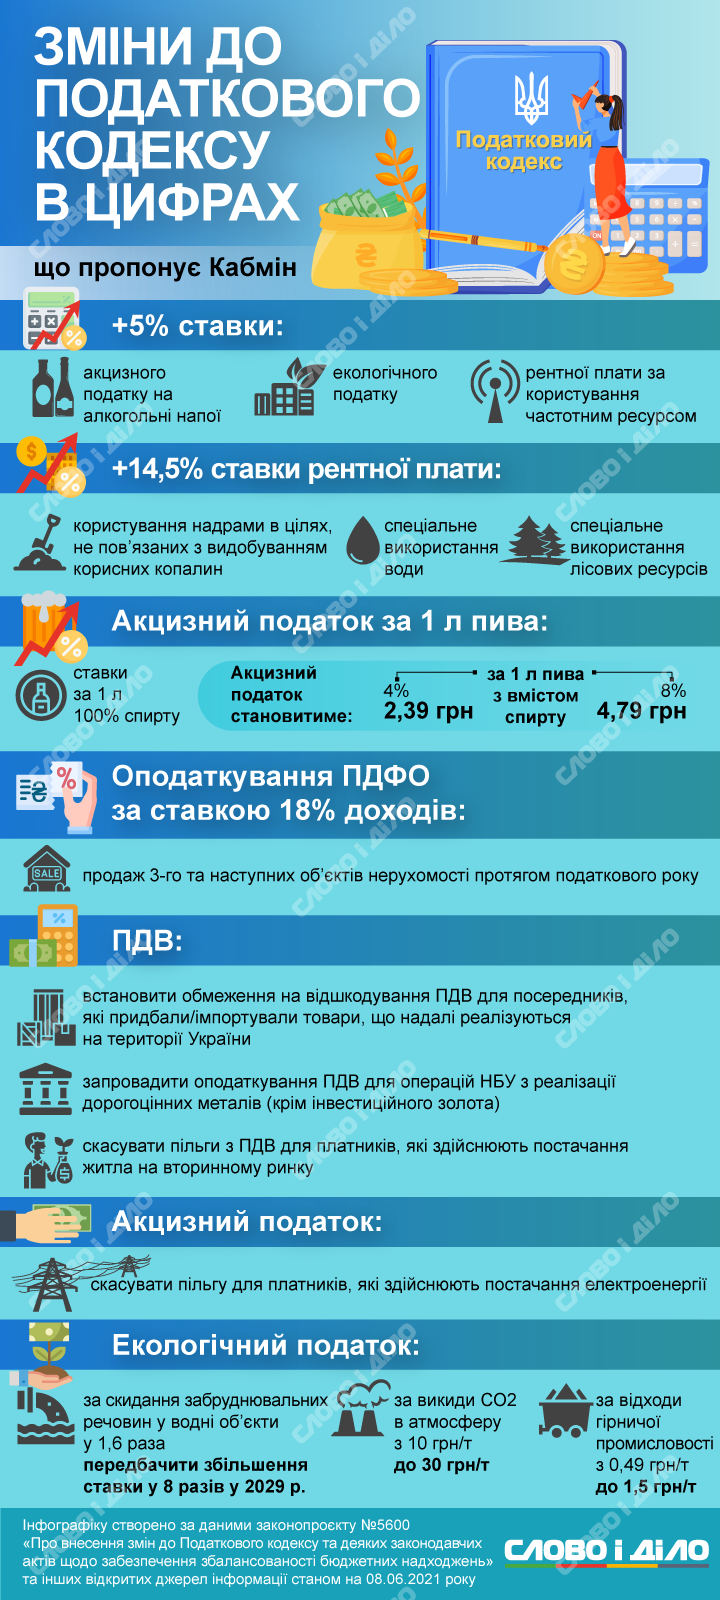 В Украине может вырасти экологический налог, а также ставки акцизного налога на алкоголь. Детальнее о законопроекте – на инфографике.